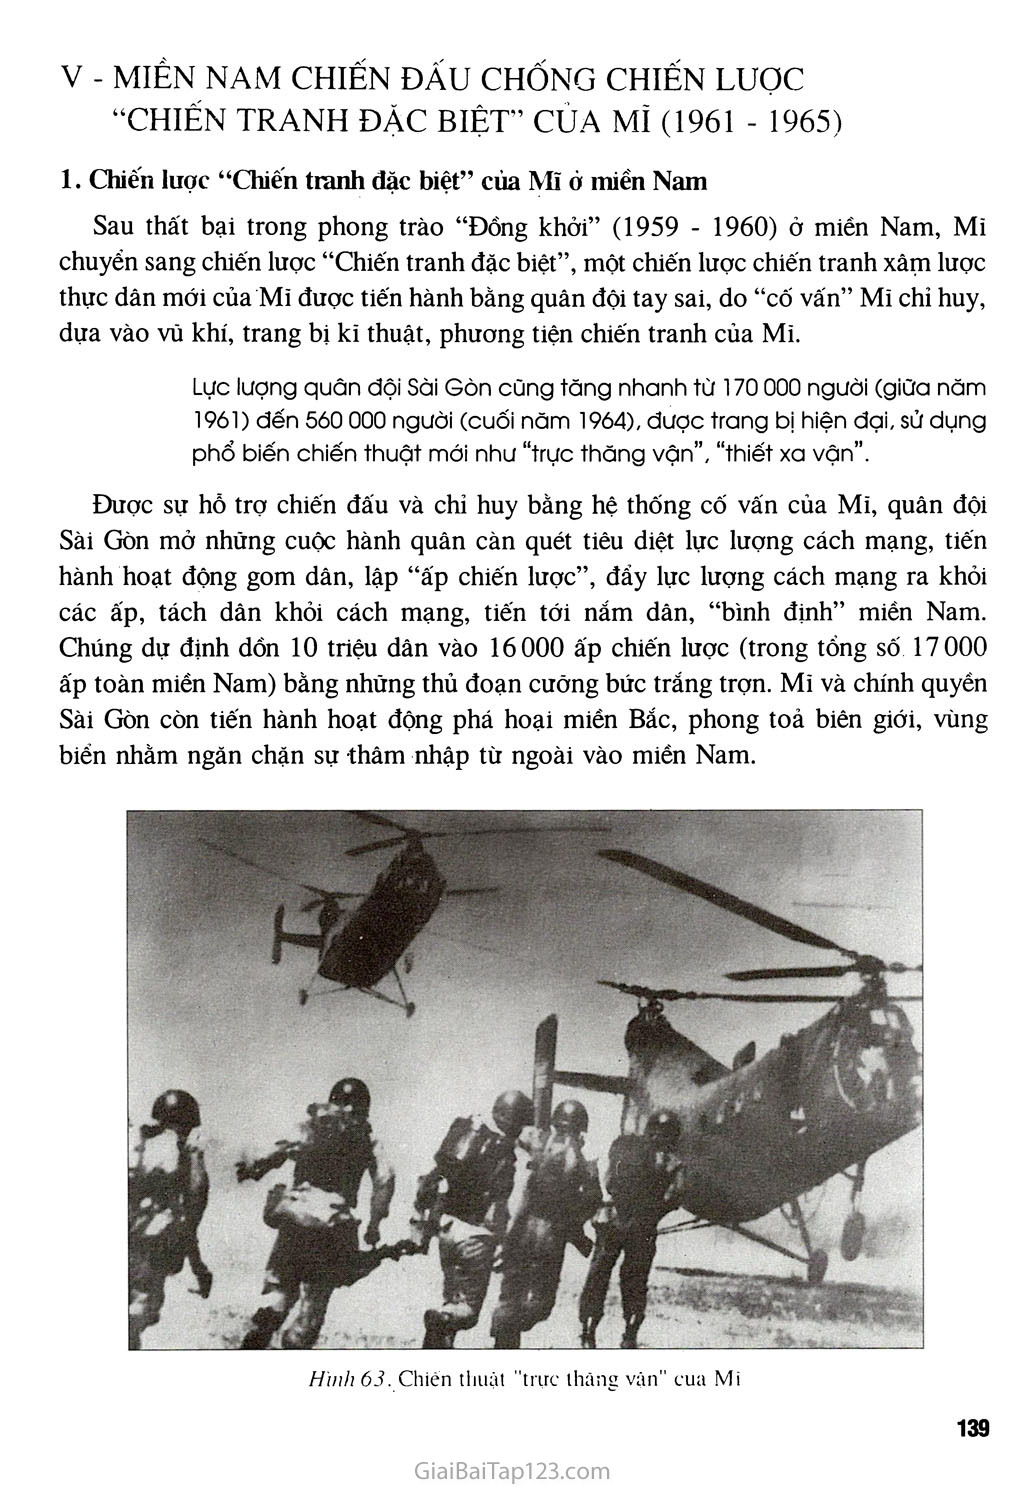 Bài 28 - Xây dựng chủ nghĩa xã hội ở miền Bắc, đấu tranh chống đế quốc Mĩ và chính quyền Sài Gòn ở miền Nam (1954 - 1965) trang 12